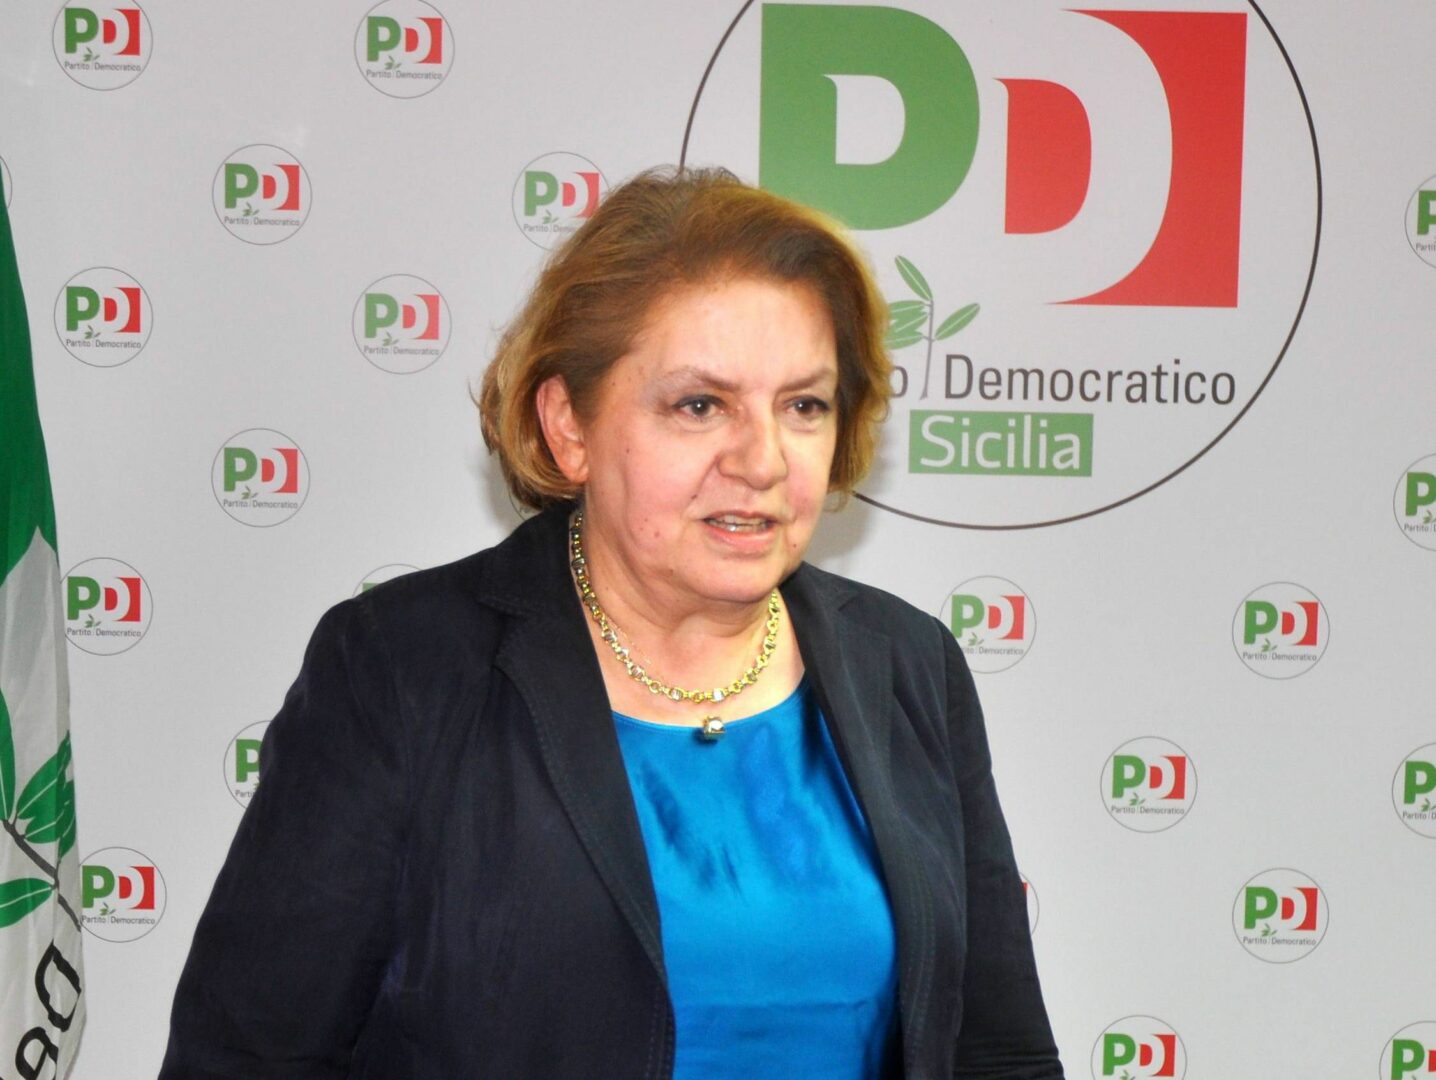 Vertice del Campo Progressista in Sicilia, Chinnici “Mio ruolo di cucitura tra forze politiche”